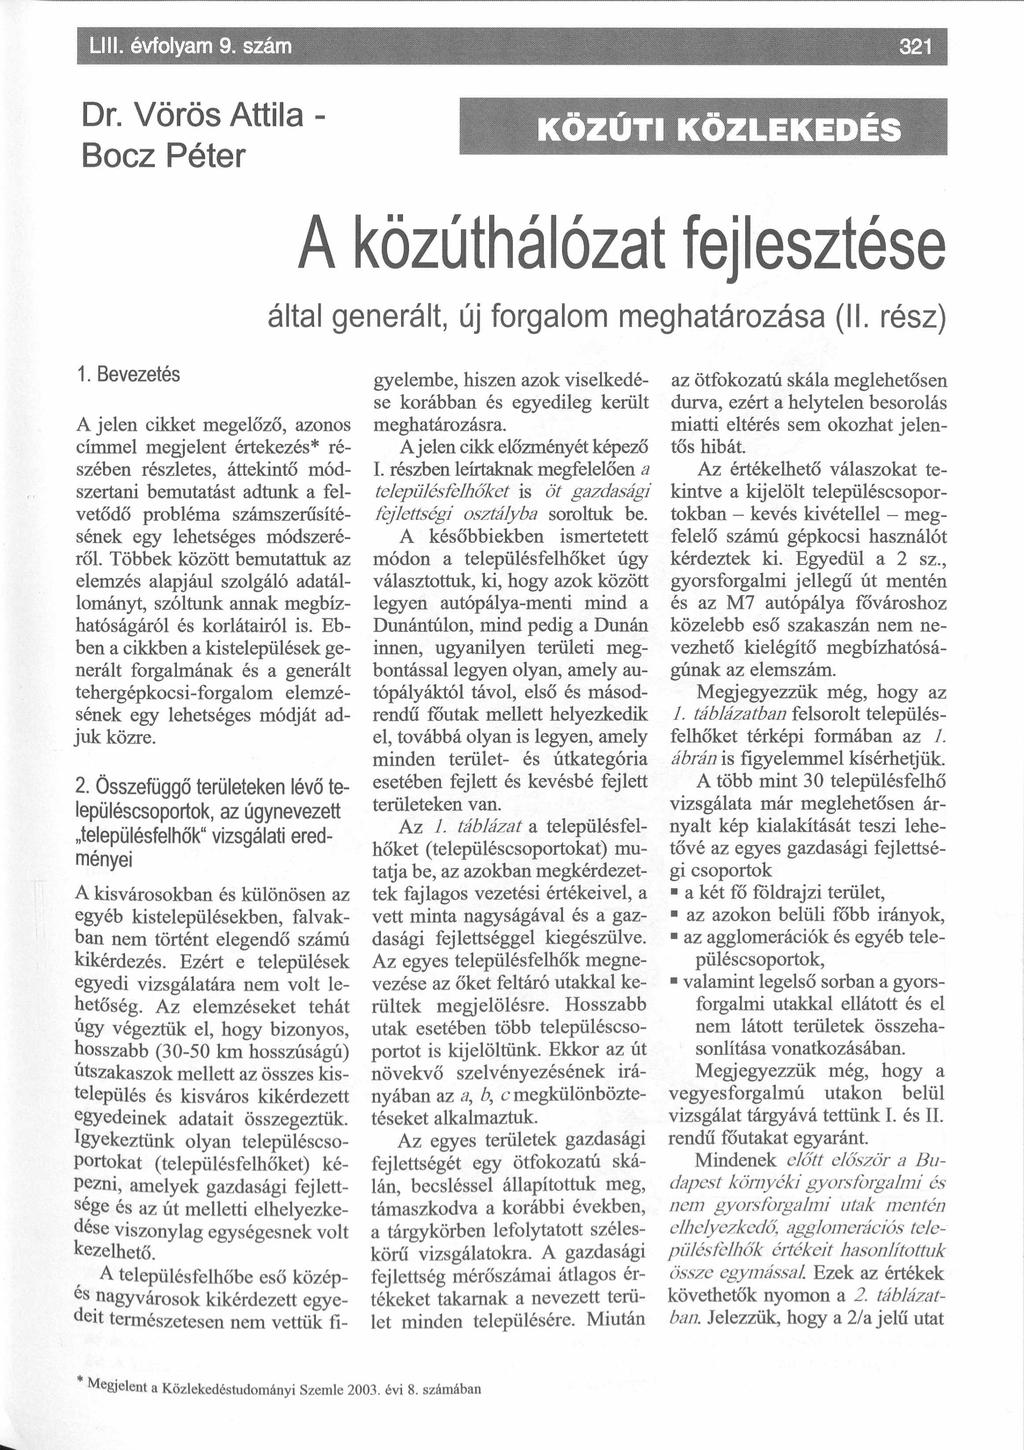 Lili. évfolyam 9. szám Dr. Vörös Attila - Bocz Péter - S K Ö Z Ú T I K O Z L E K E D E S A közúthálózat fejlesztése által generált, új forgalom meghatározása (II. rész) 1.